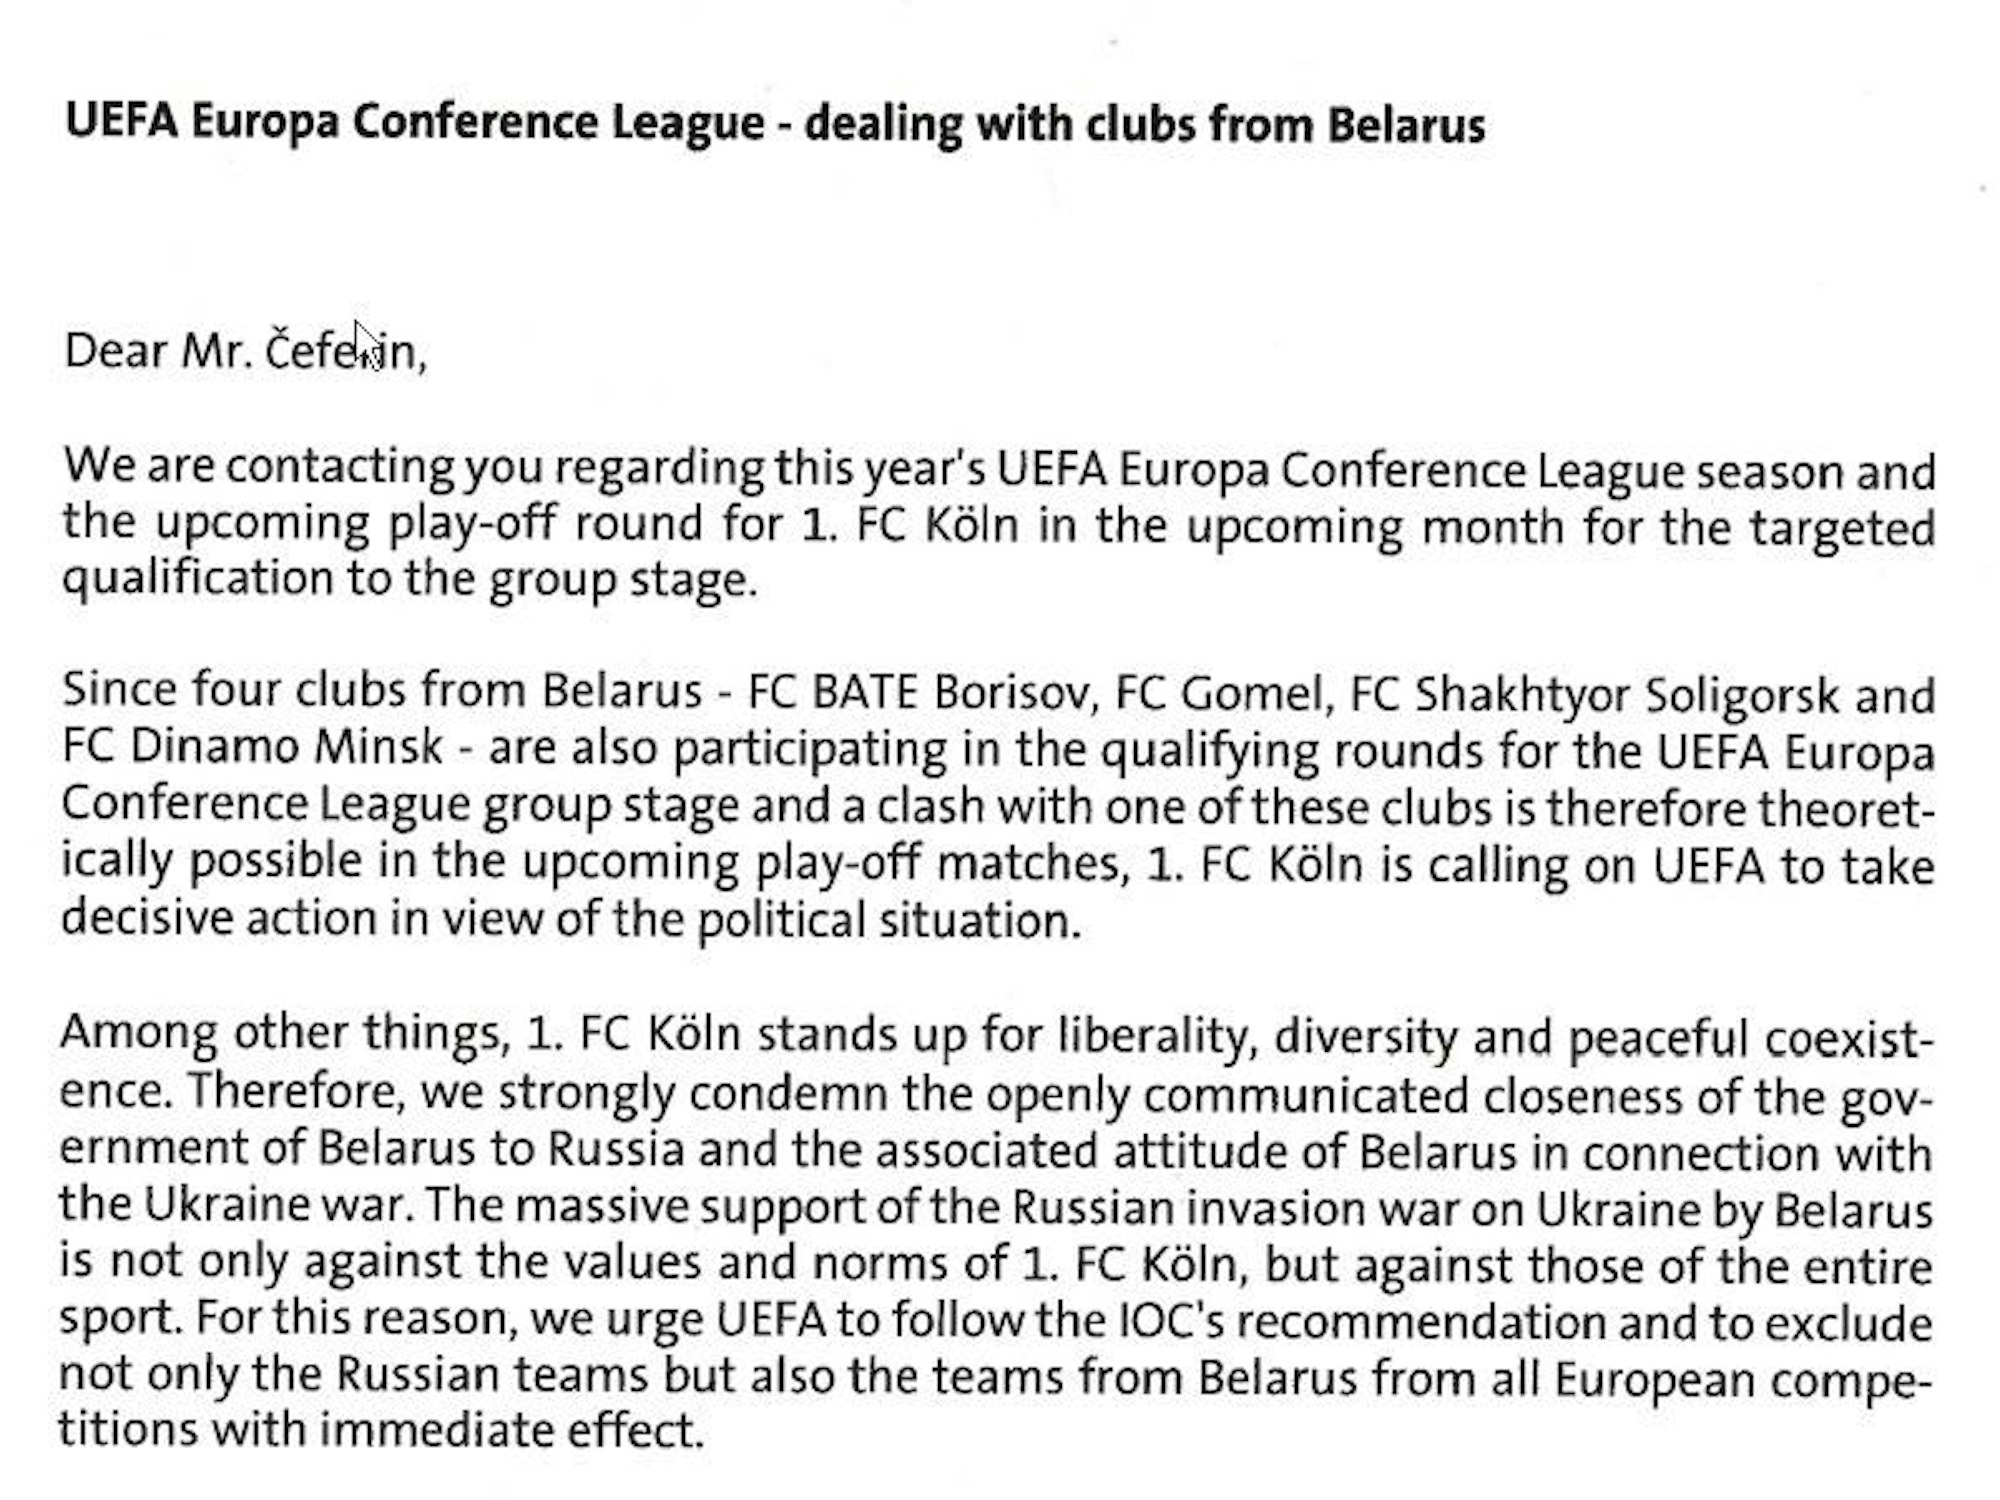 Der Beginn des Briefes an UEFA-Präsident Aleksander Ceferin: Der 1. FC Köln fordert darin den Ausschluss belarussischer Klubs aus den internationalen Wettbewerben.